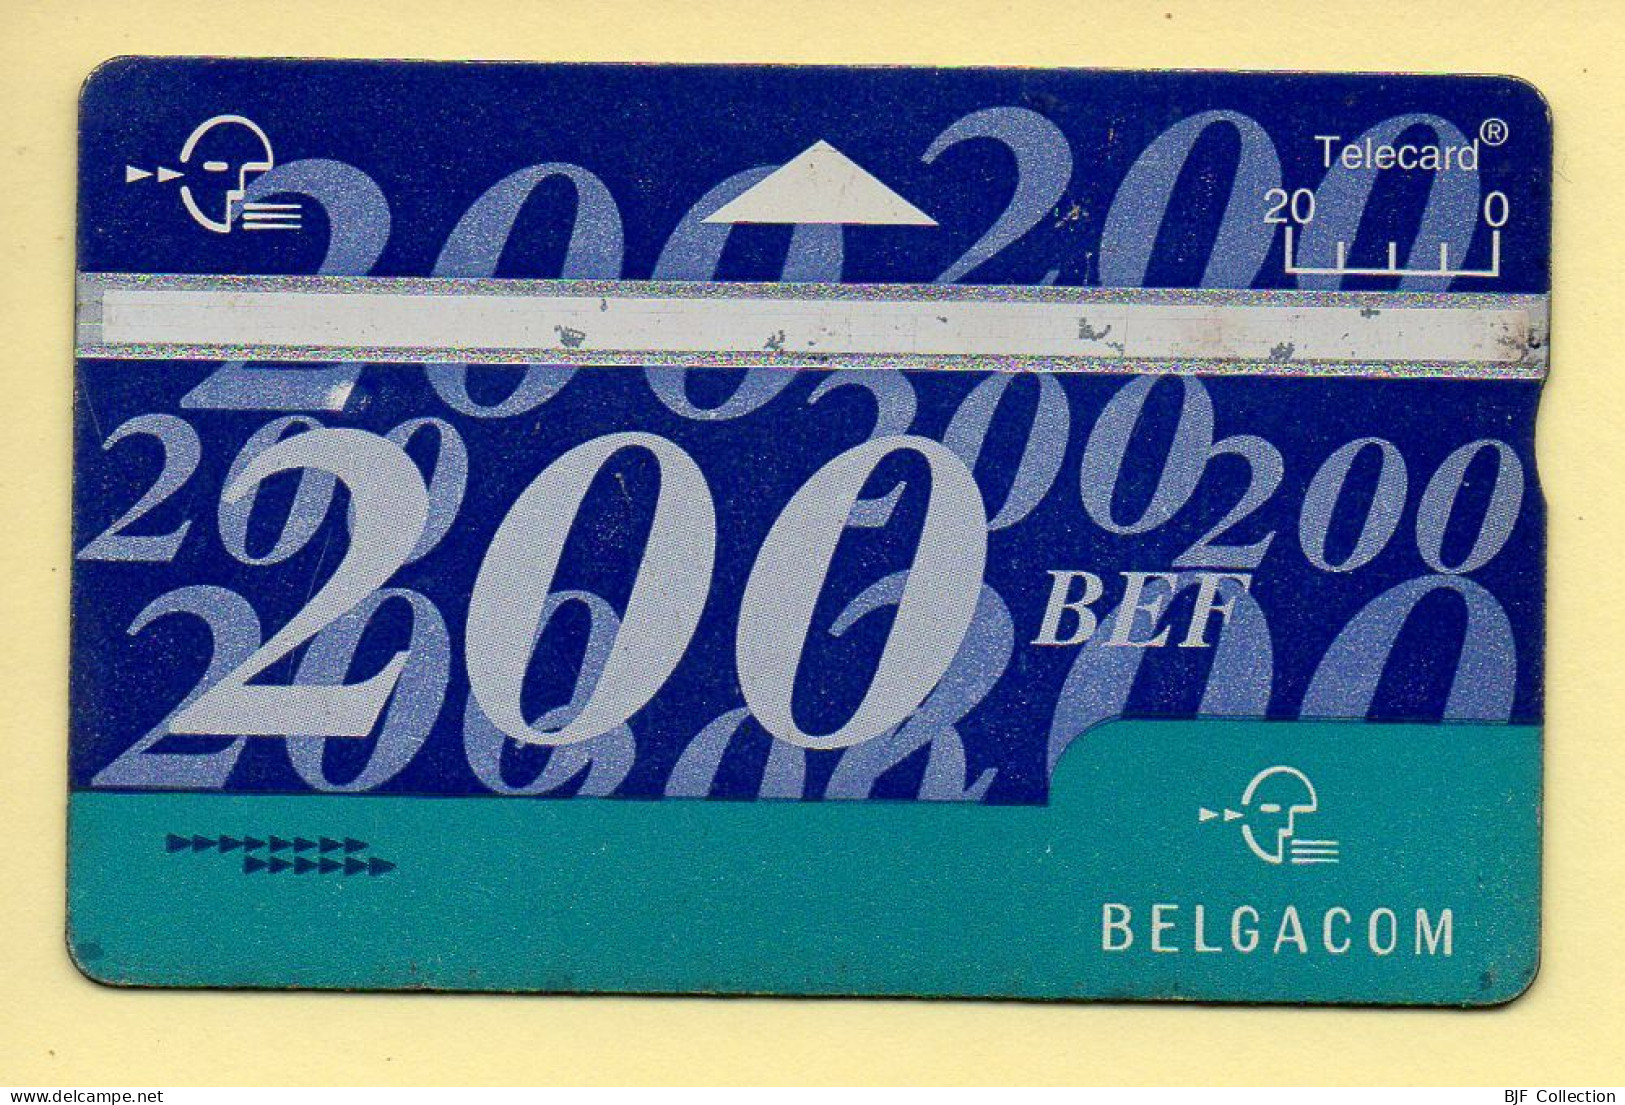 Télécarte : Belgique : BELGACOM / 200 BEF - Without Chip